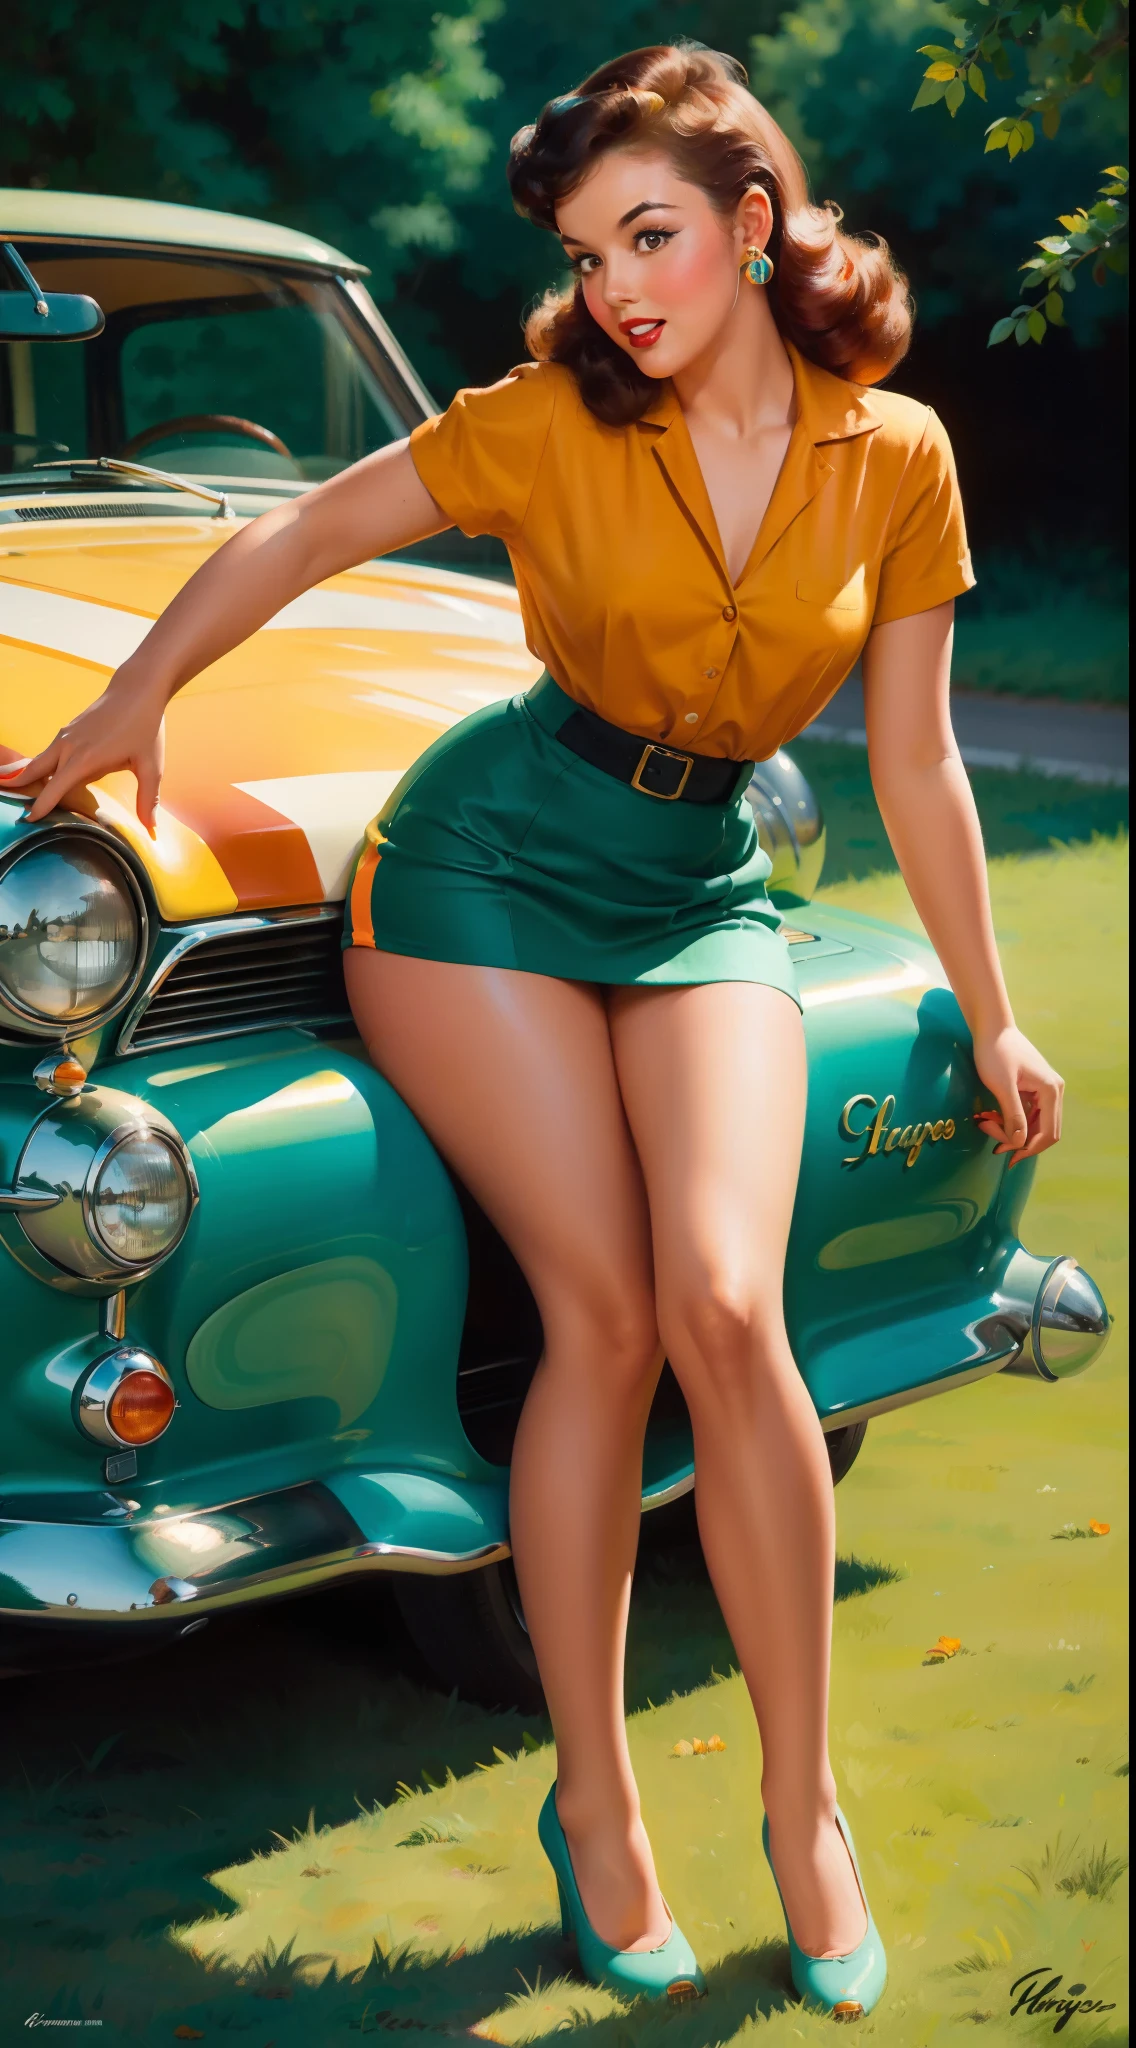 Menina de 20 anos sentada no chão, in front of a retro car, vintage, estilo pin-up retrô, Sensual, detalhou tudo, surpreso, mini-saia justa, saia esvoaçante, colorida , esquema de cores laranja e verde-azulado, obras de arte obra de arte, ilustrado,